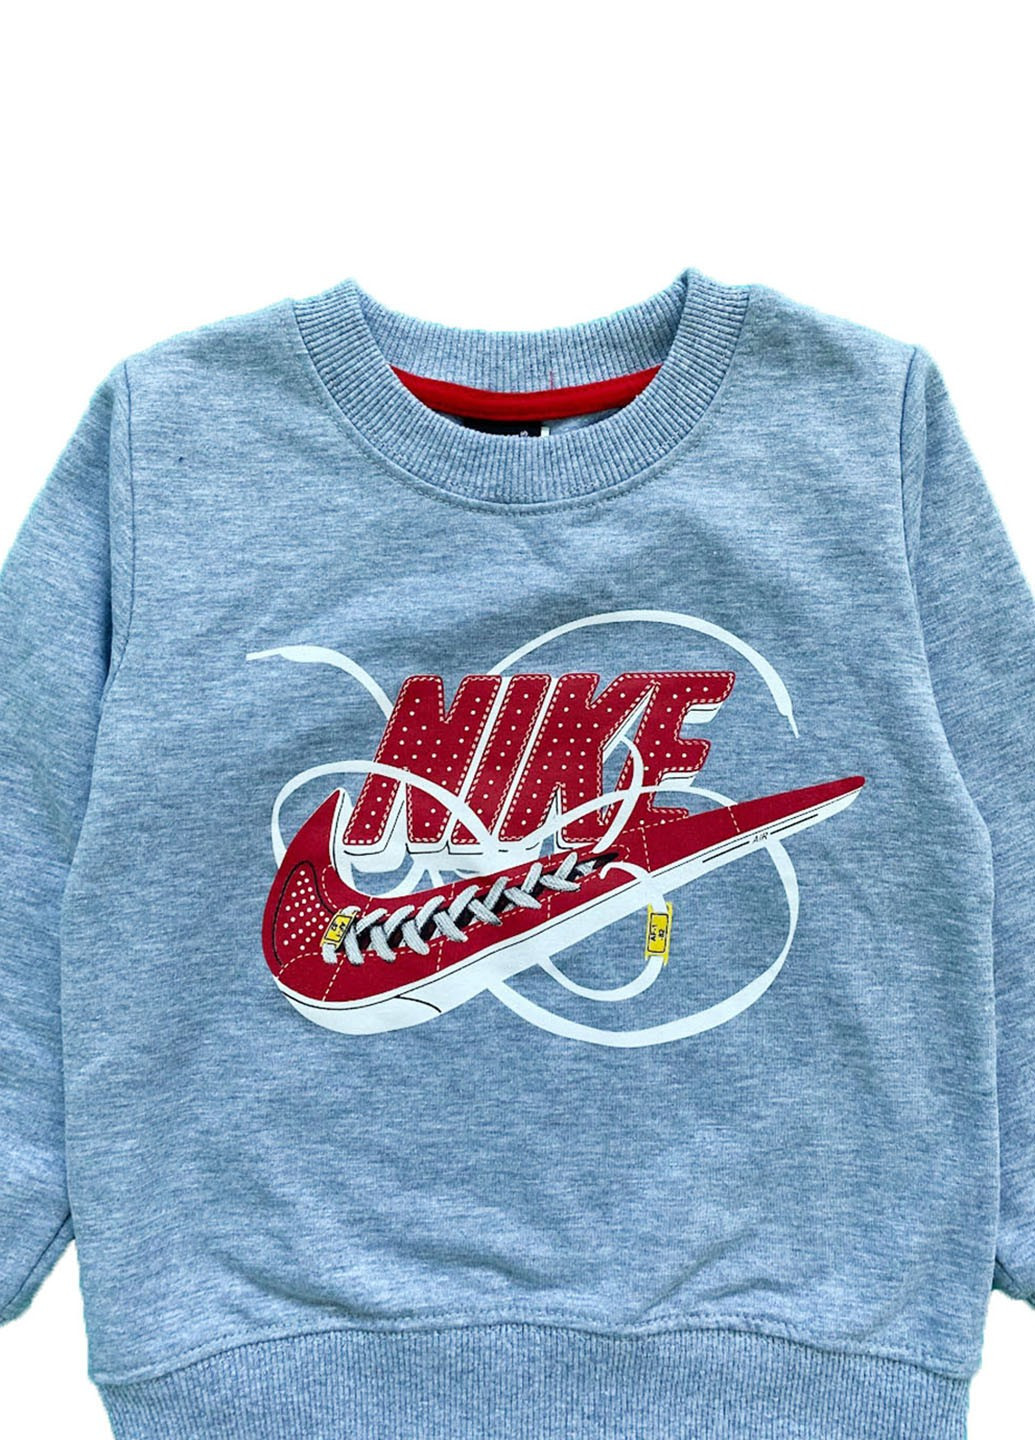 Світшот сірий Nike Kids (276530161)